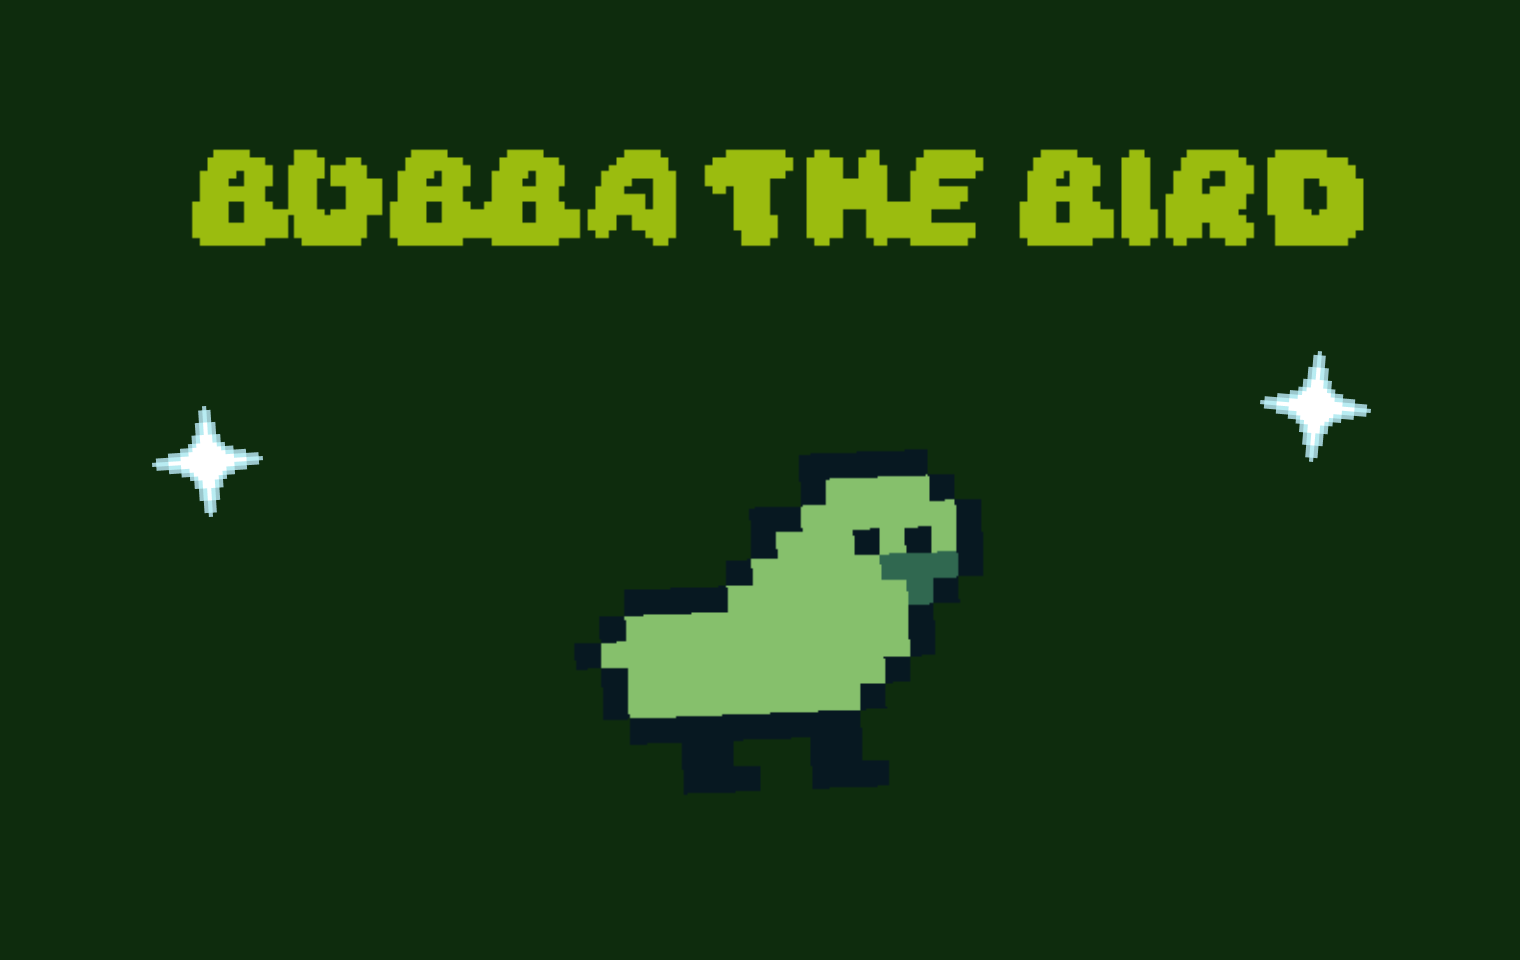 Bubba The Bird